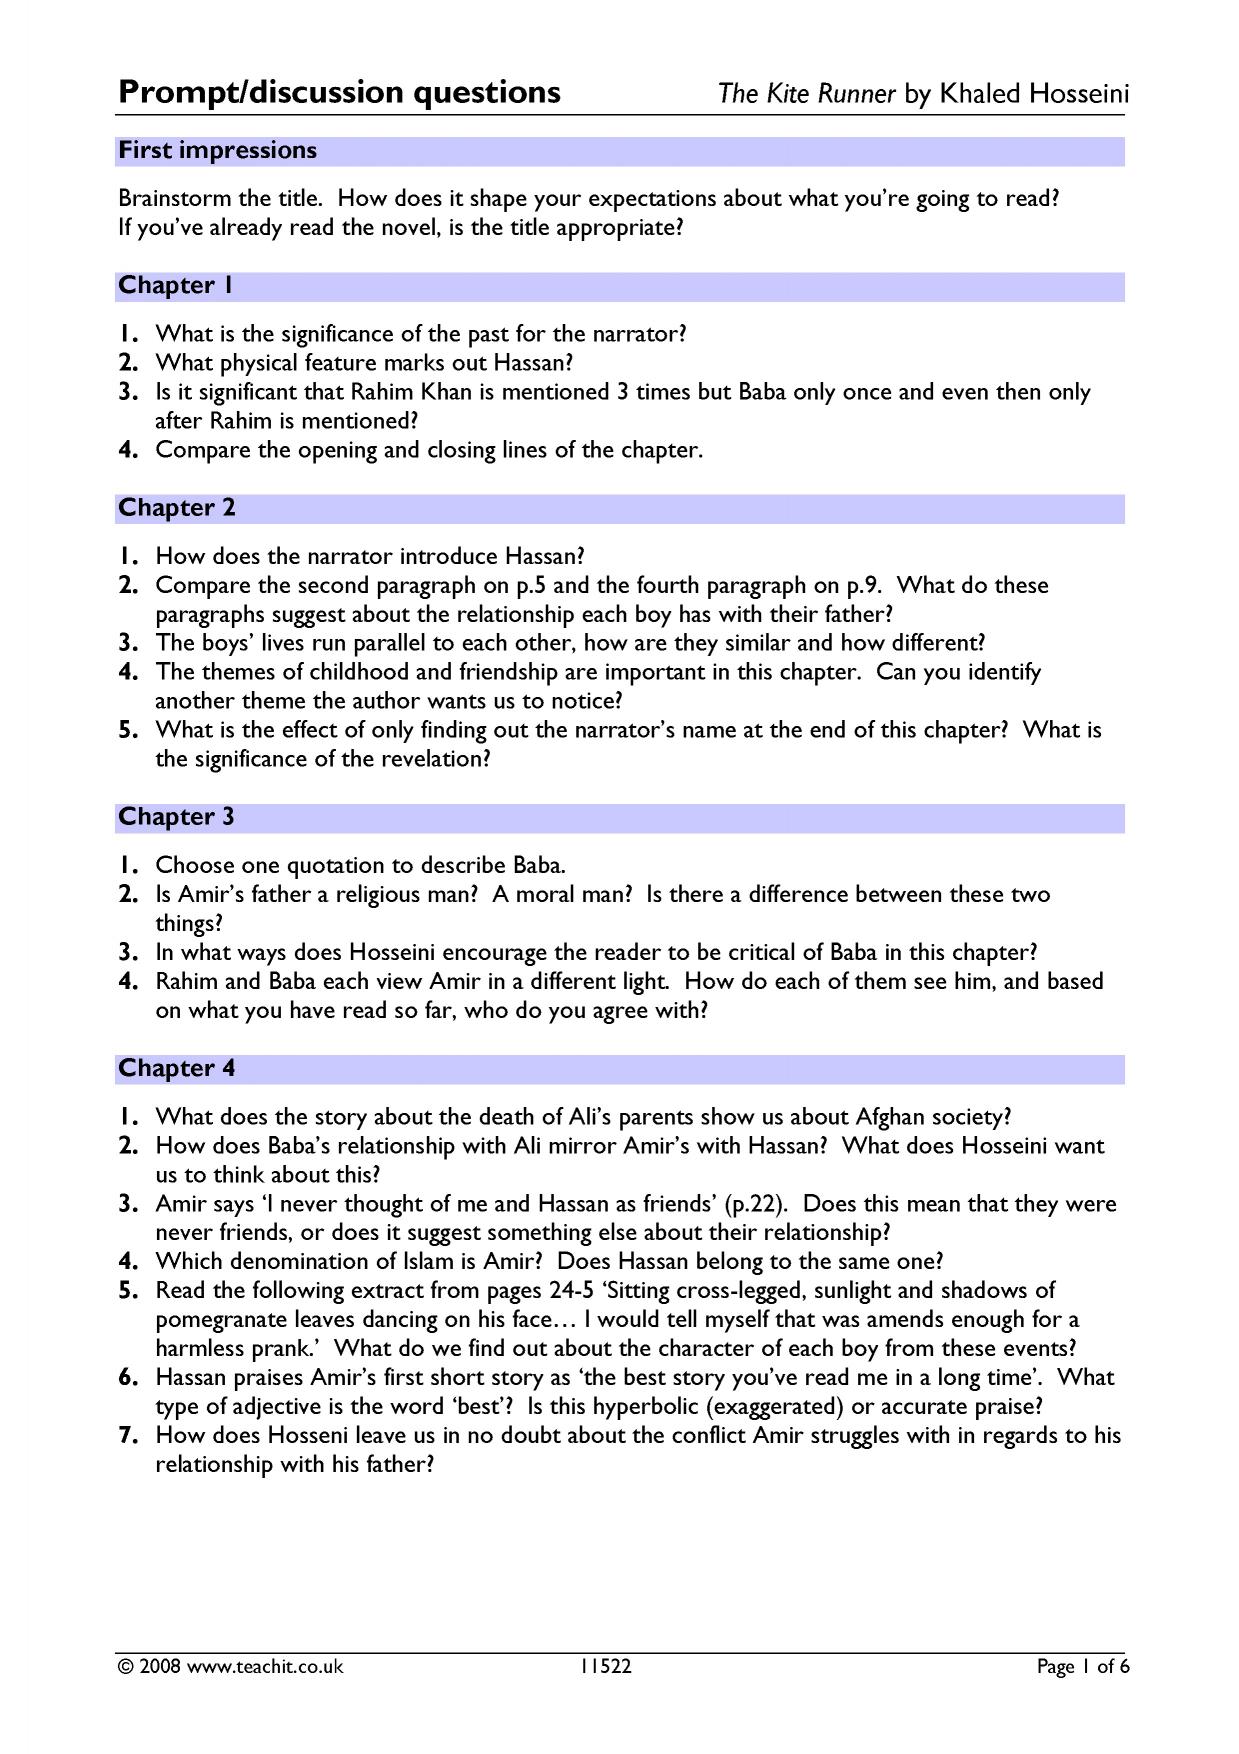 Kite runner essay questions